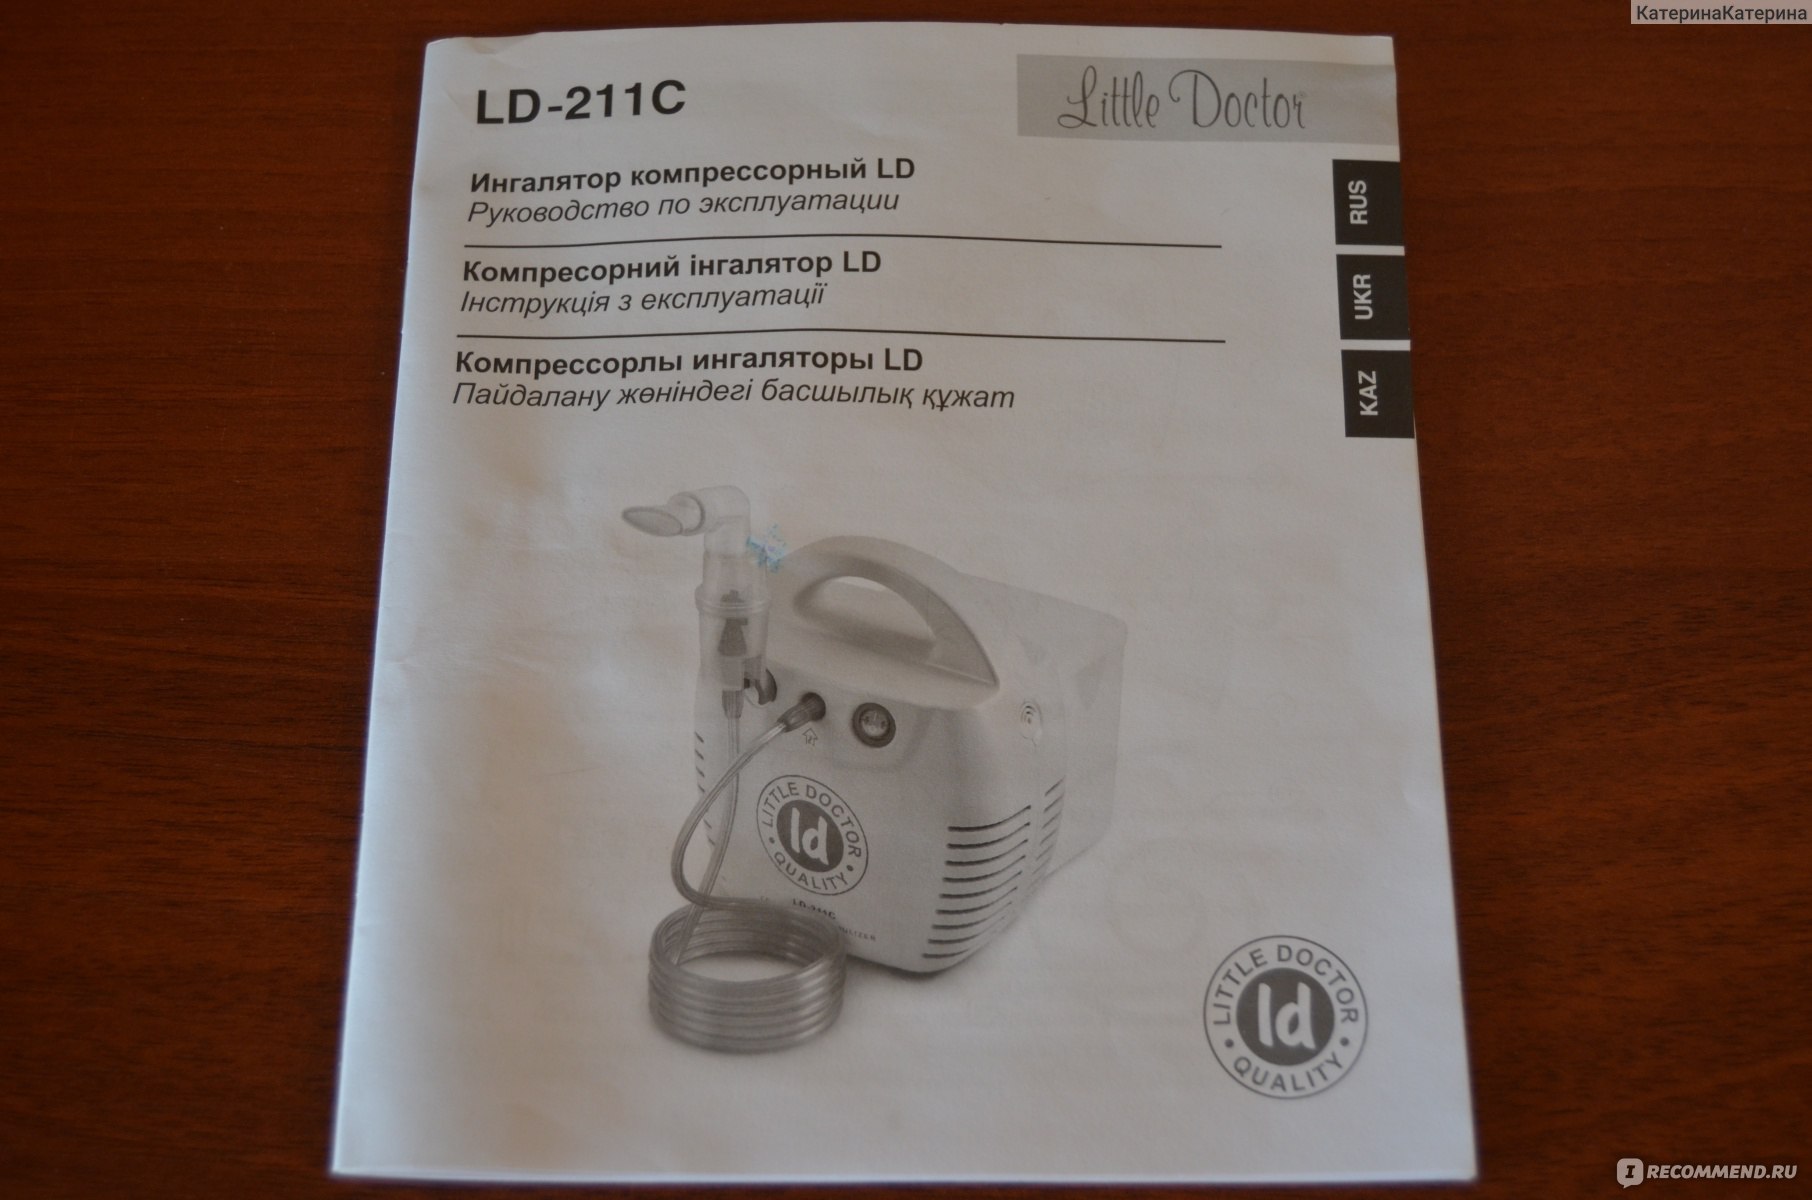 Ингалятор little Doctor LD-211c компрессорный инструкция